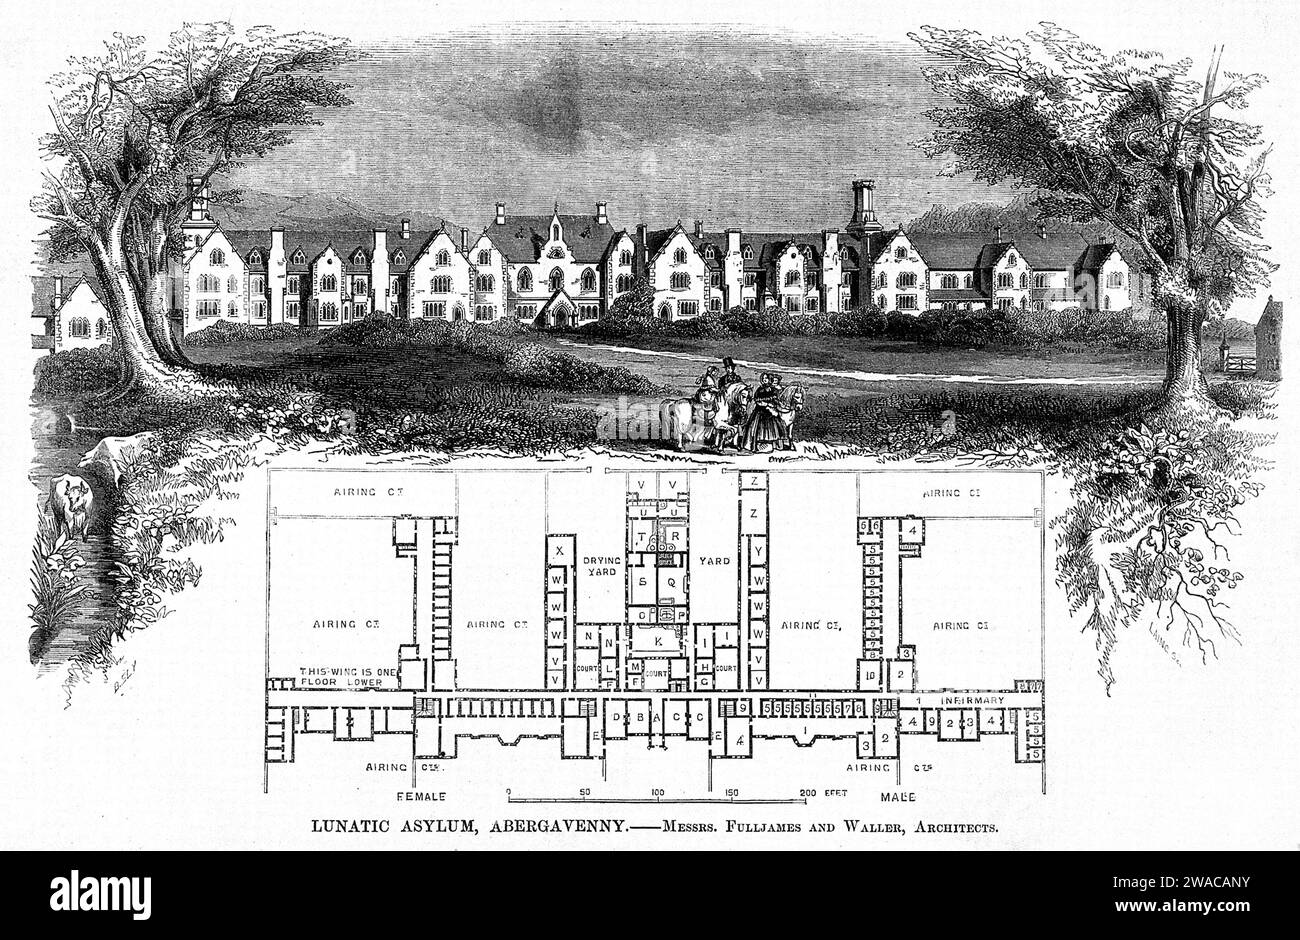 Piano e disegno del manicomio lunatico, Abergavenny, Galles, Regno Unito, pubblicato su The Builder, una rivista settimanale, 1851, The Builder Foto Stock